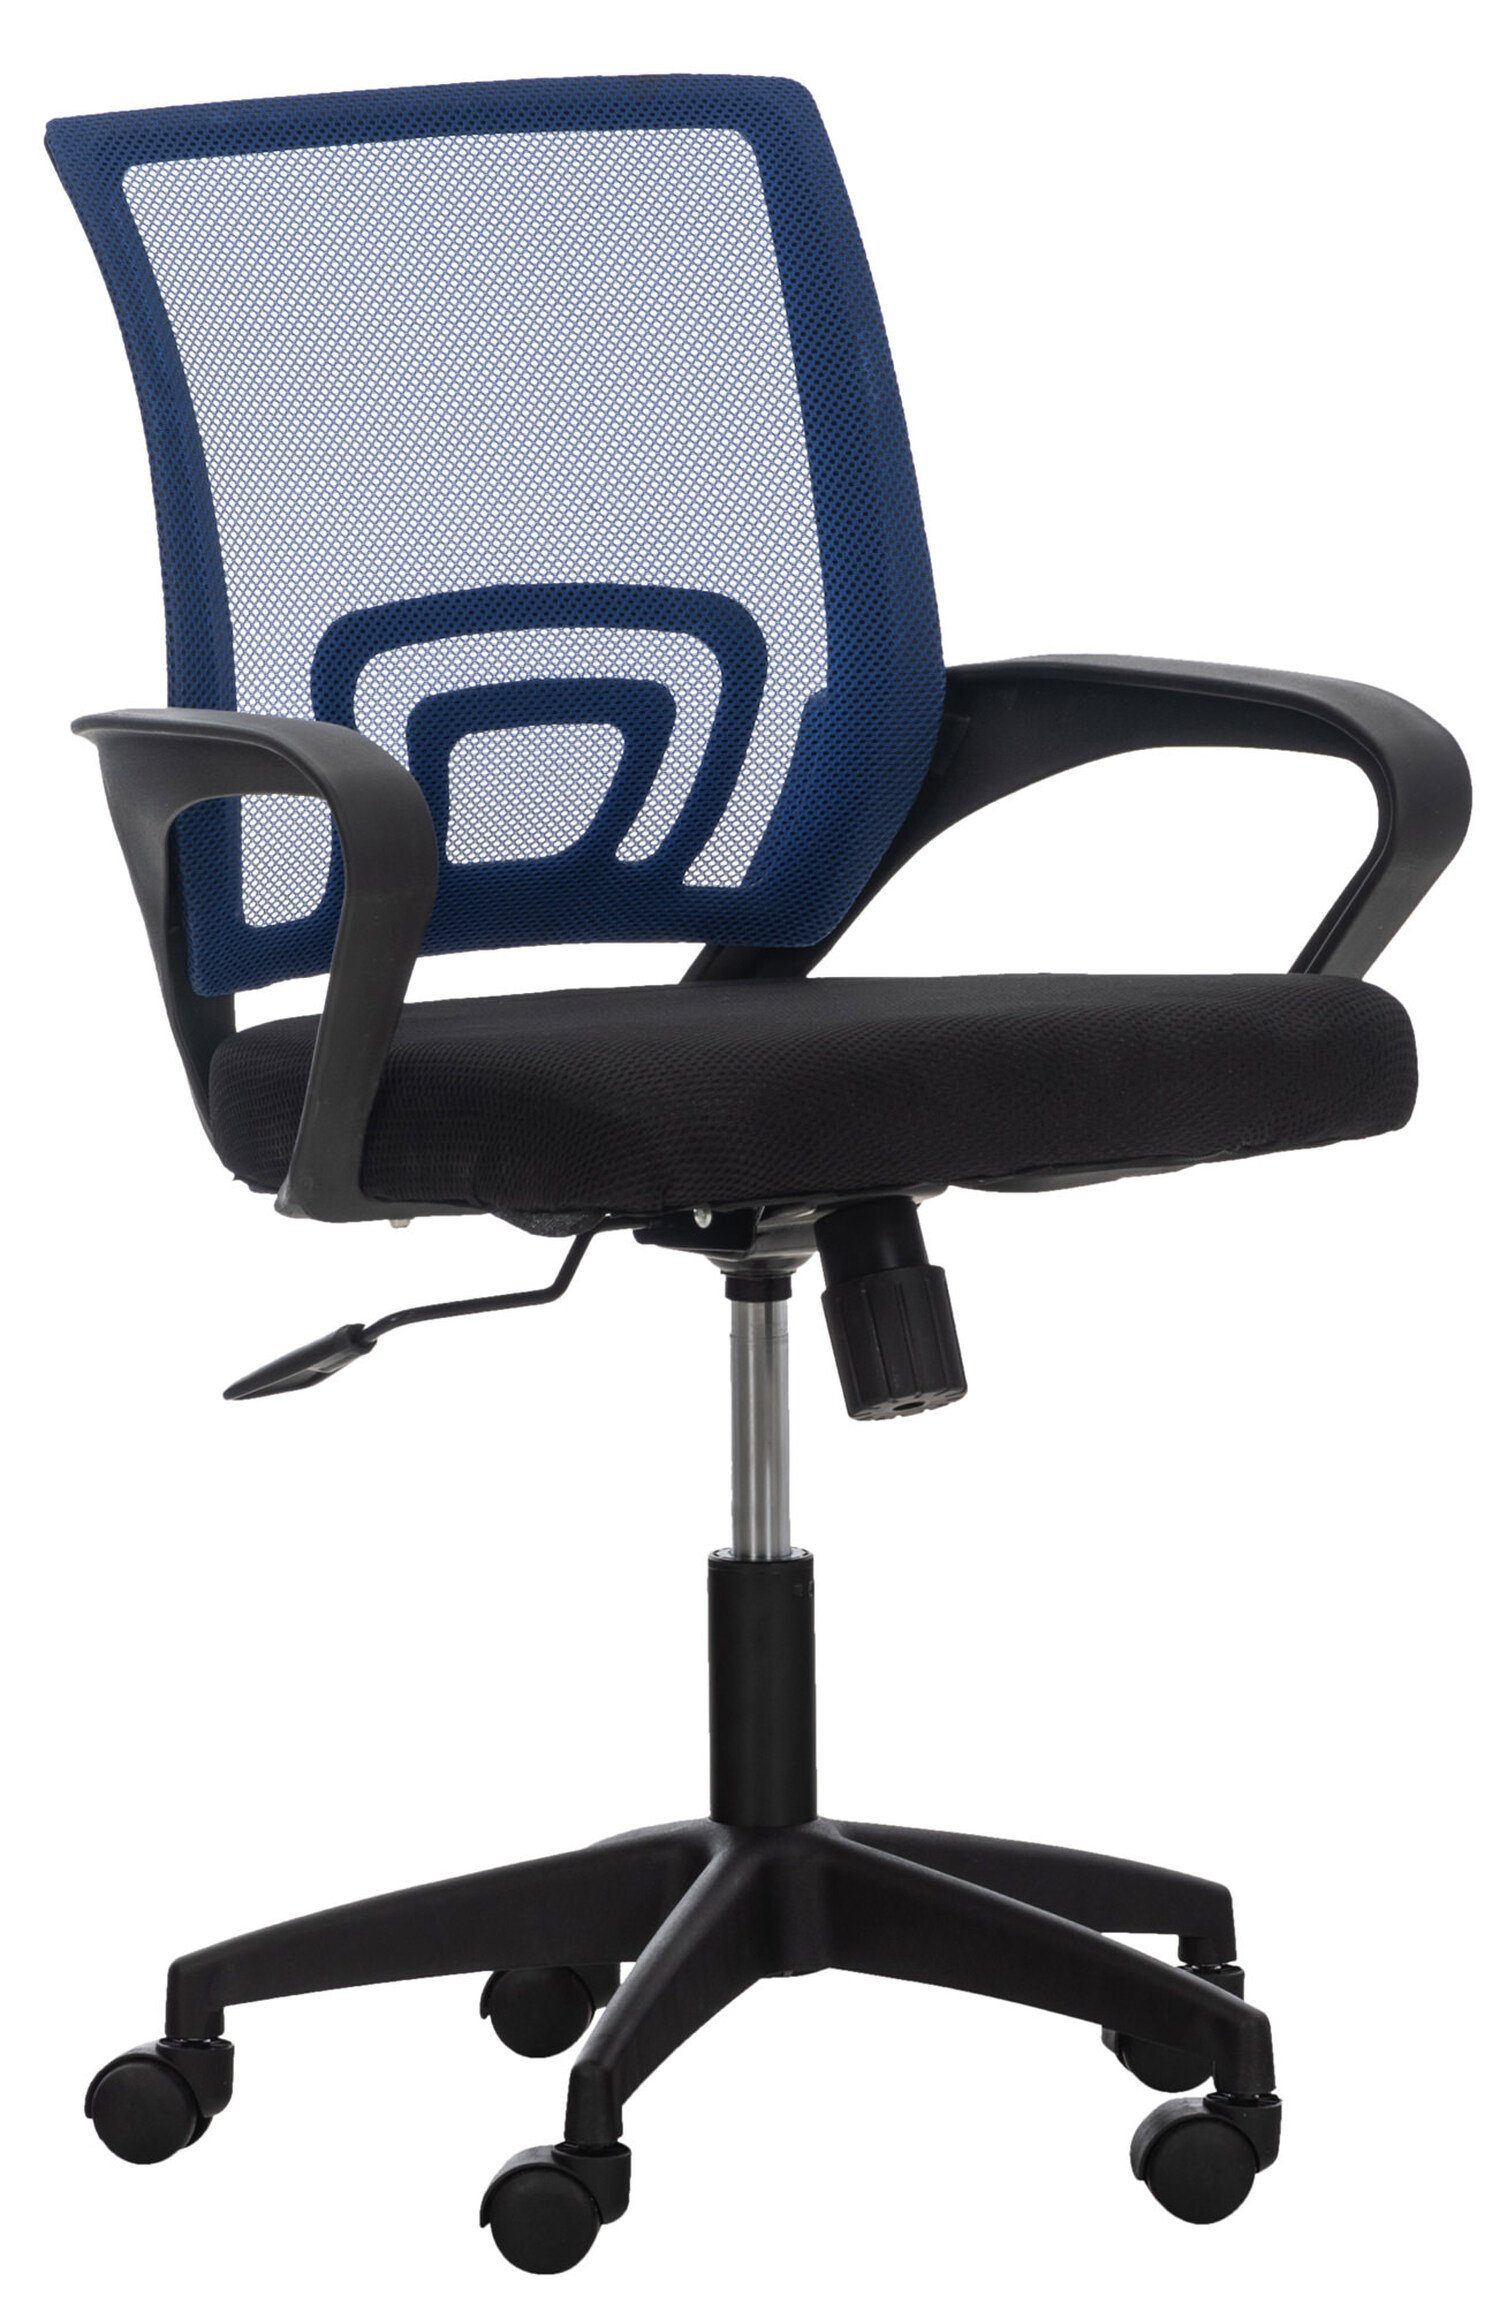 TPFLiving Bürostuhl Audrey mit bequemer ergonomisch geformter Rückenlehne (Schreibtischstuhl, Drehstuhl, Chefsessel, Bürostuhl XXL), Gestell: Kunststoff schwarz - Sitzfläche: Netzbezug blau